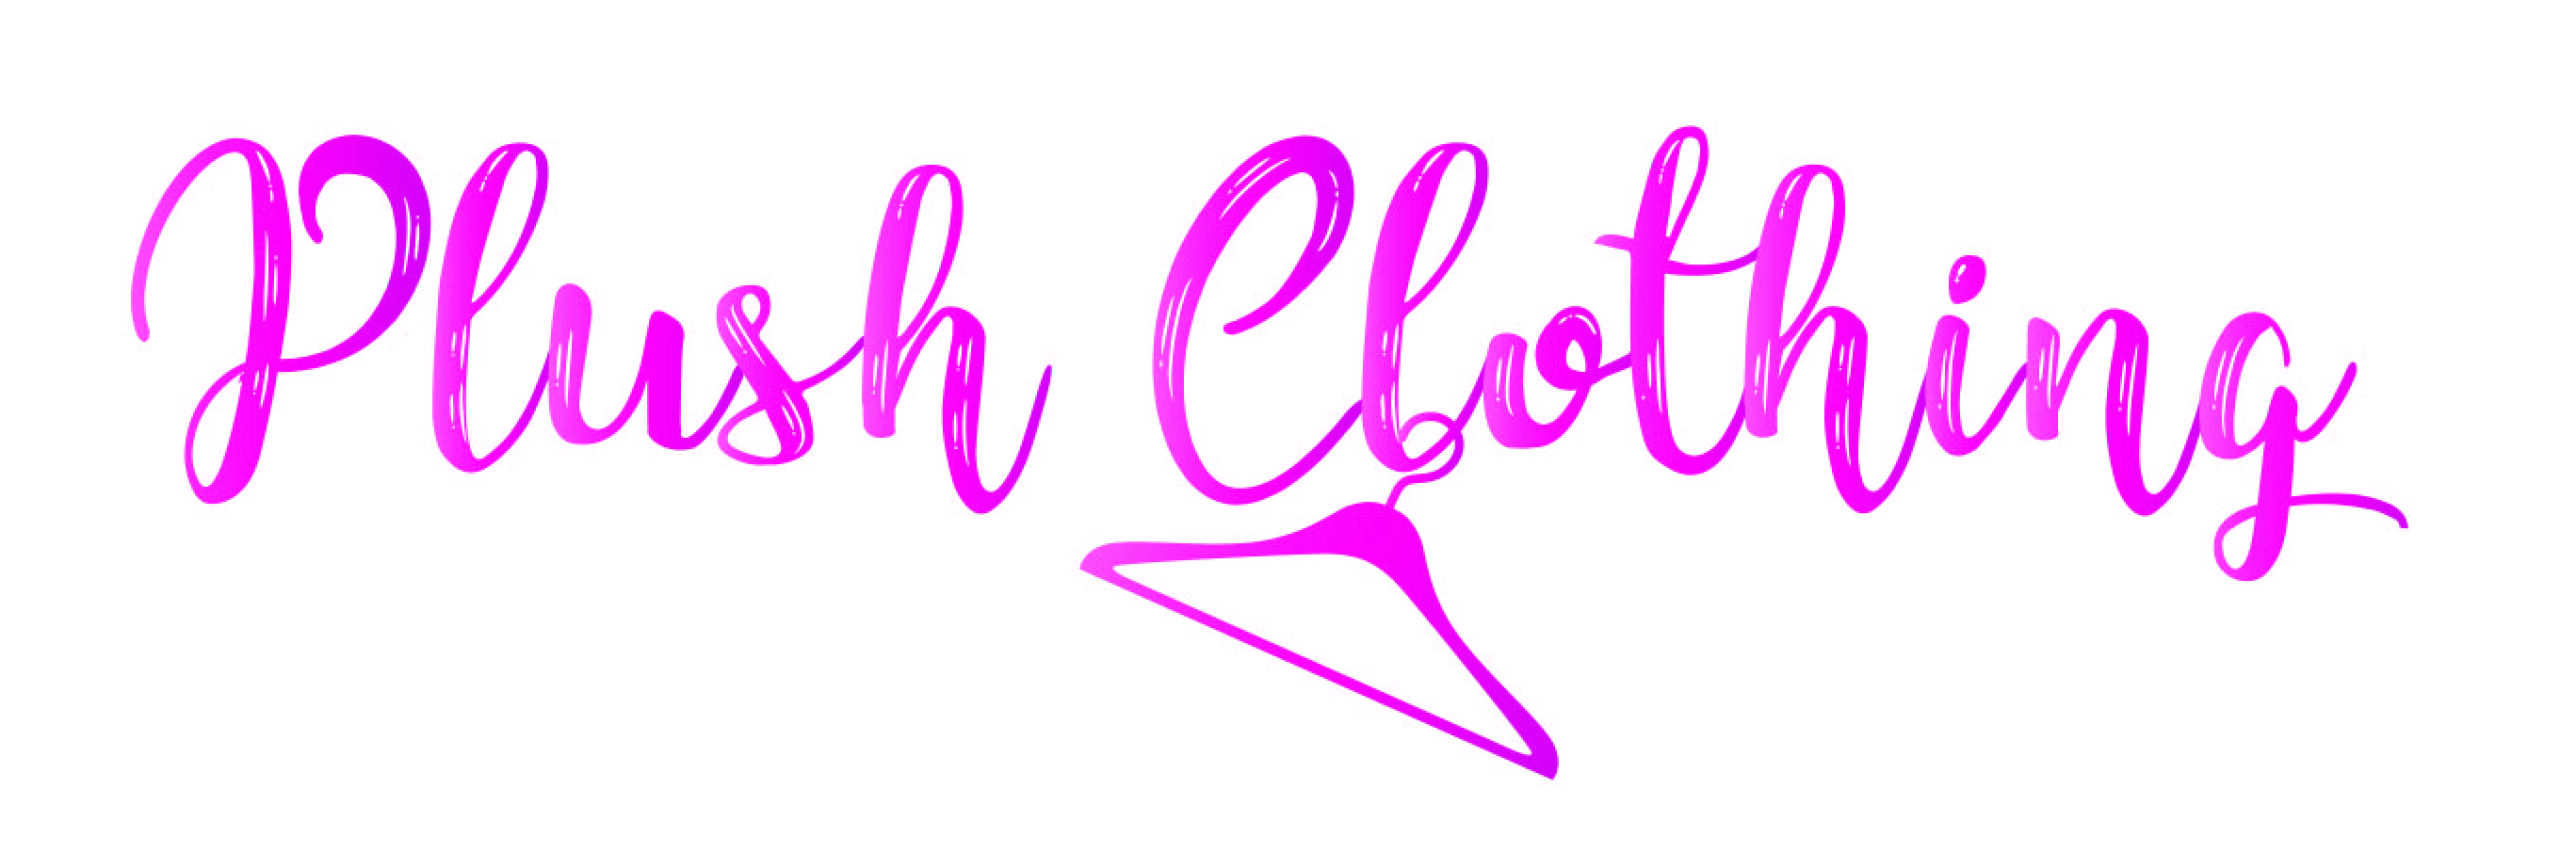 plush clothing logo